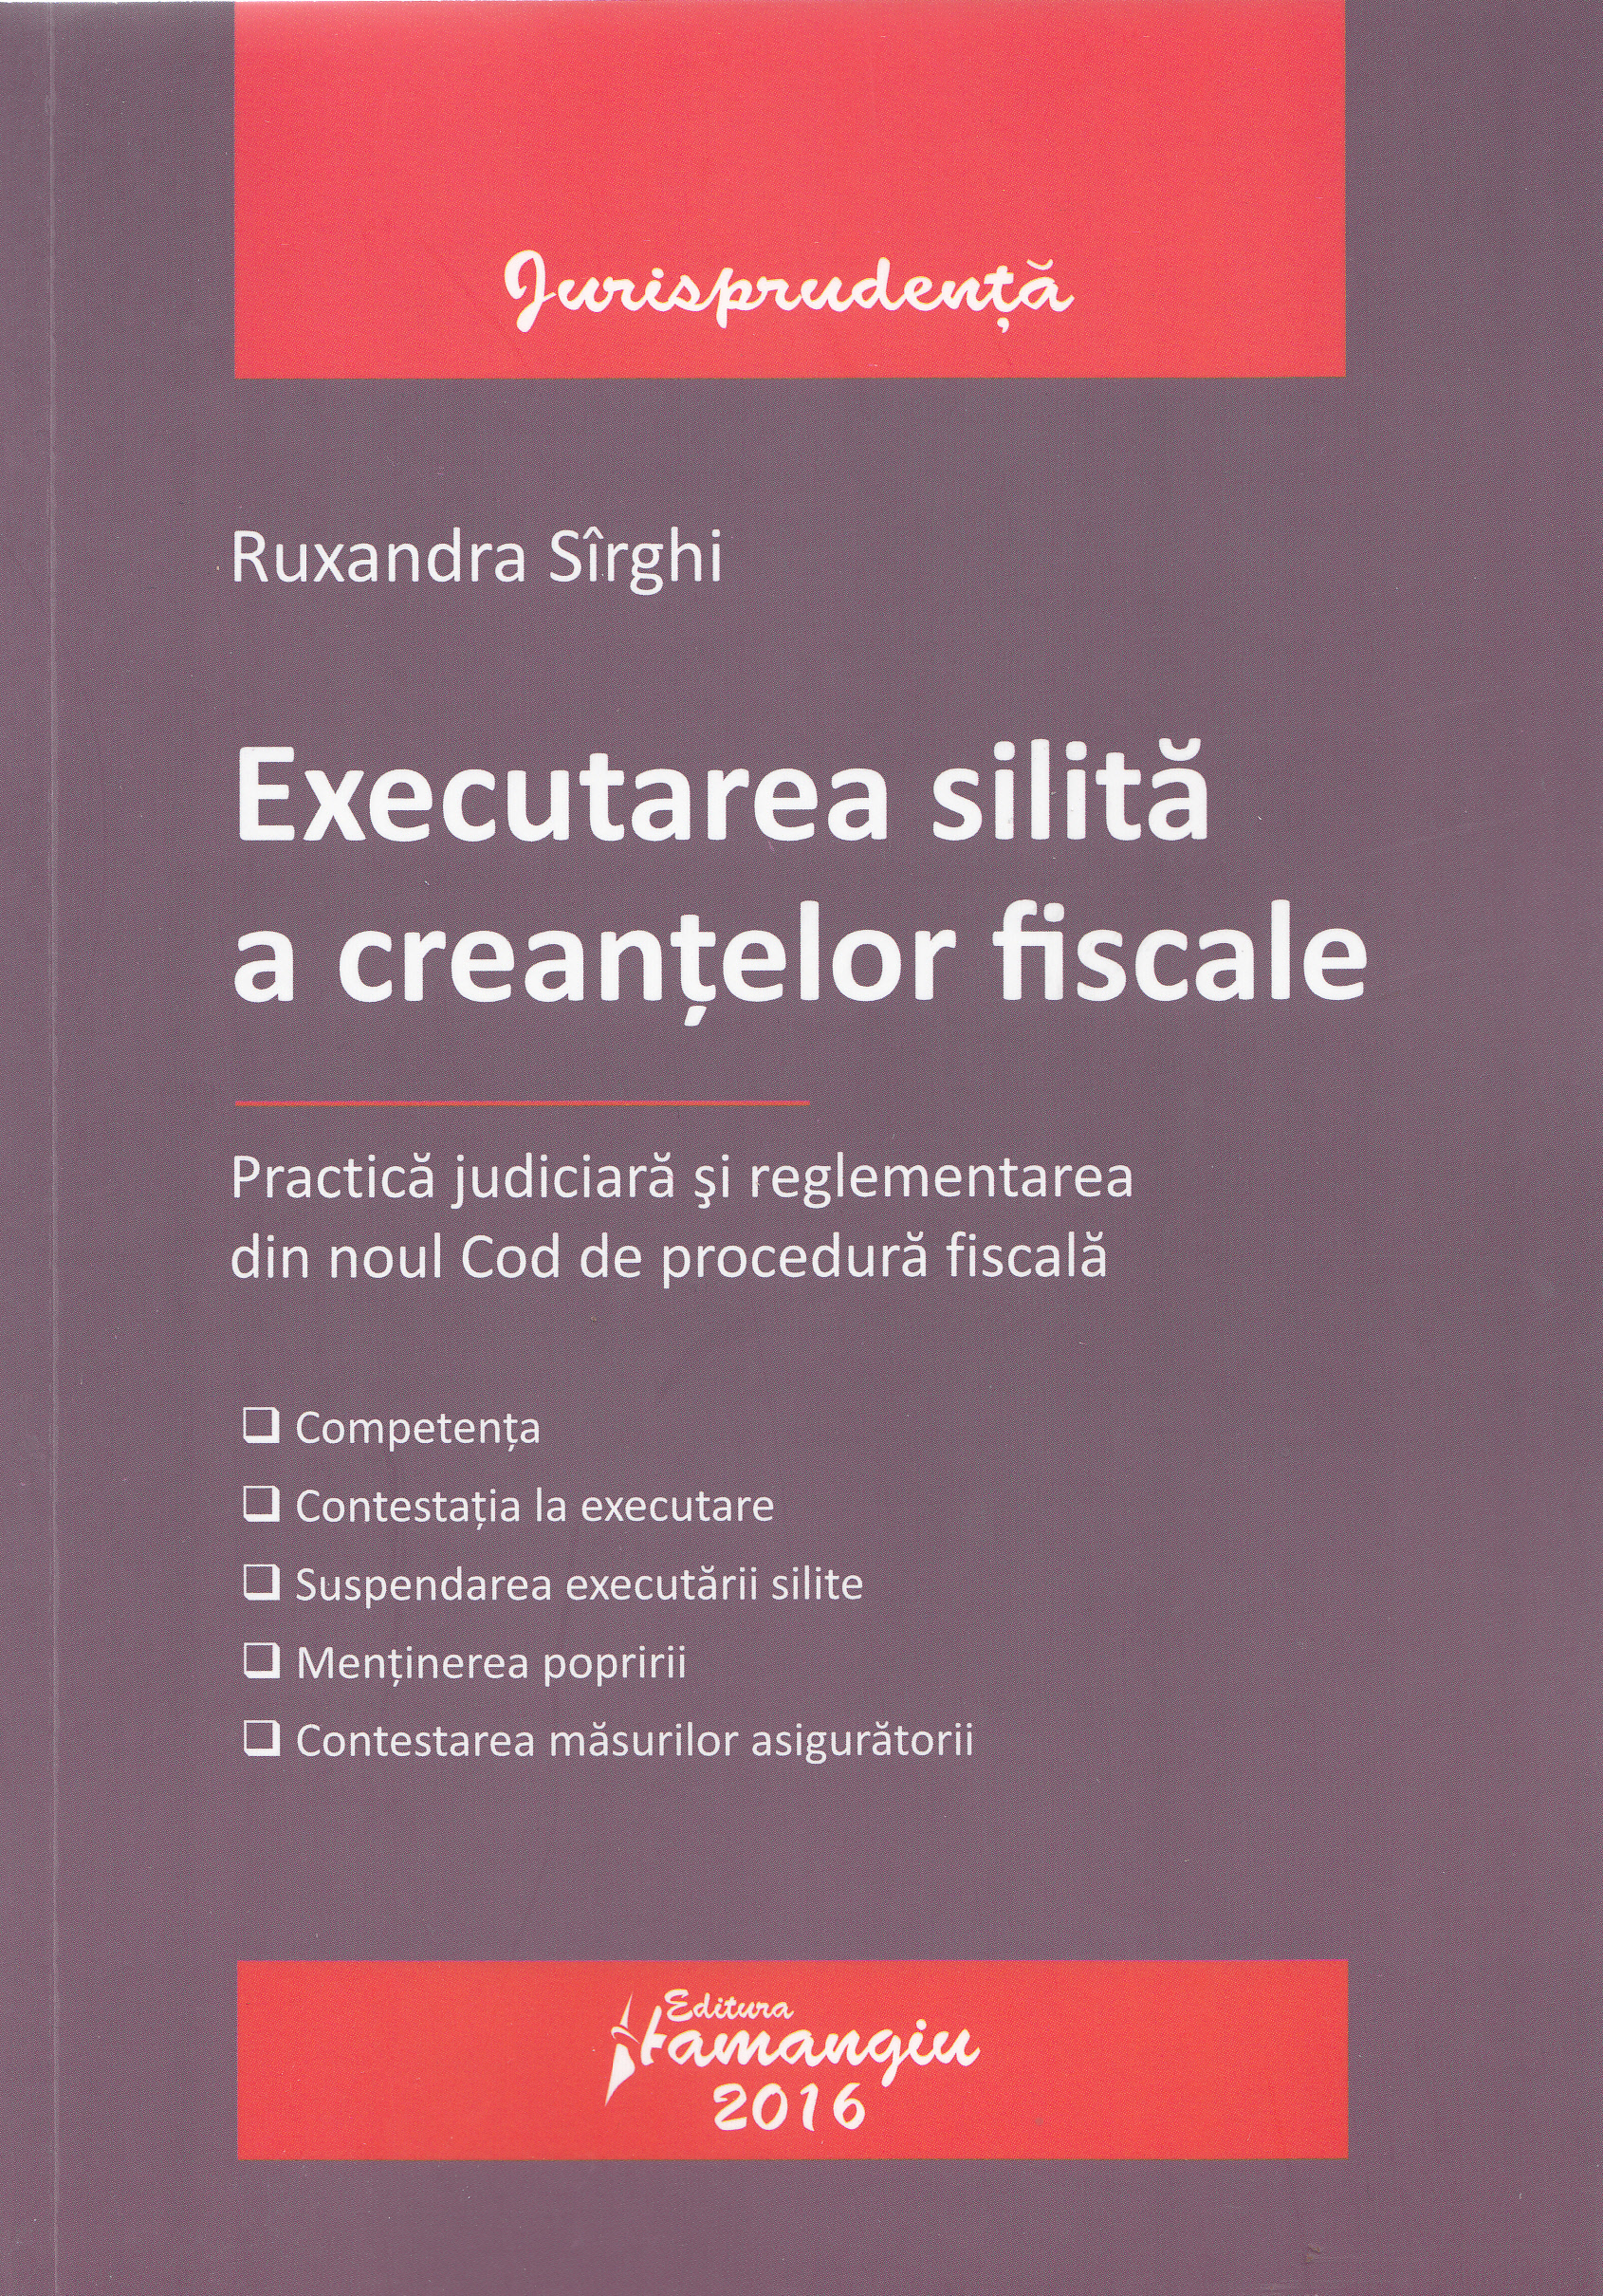 Executarea silita a creantelor fiscale - Ruxandra Sirghi